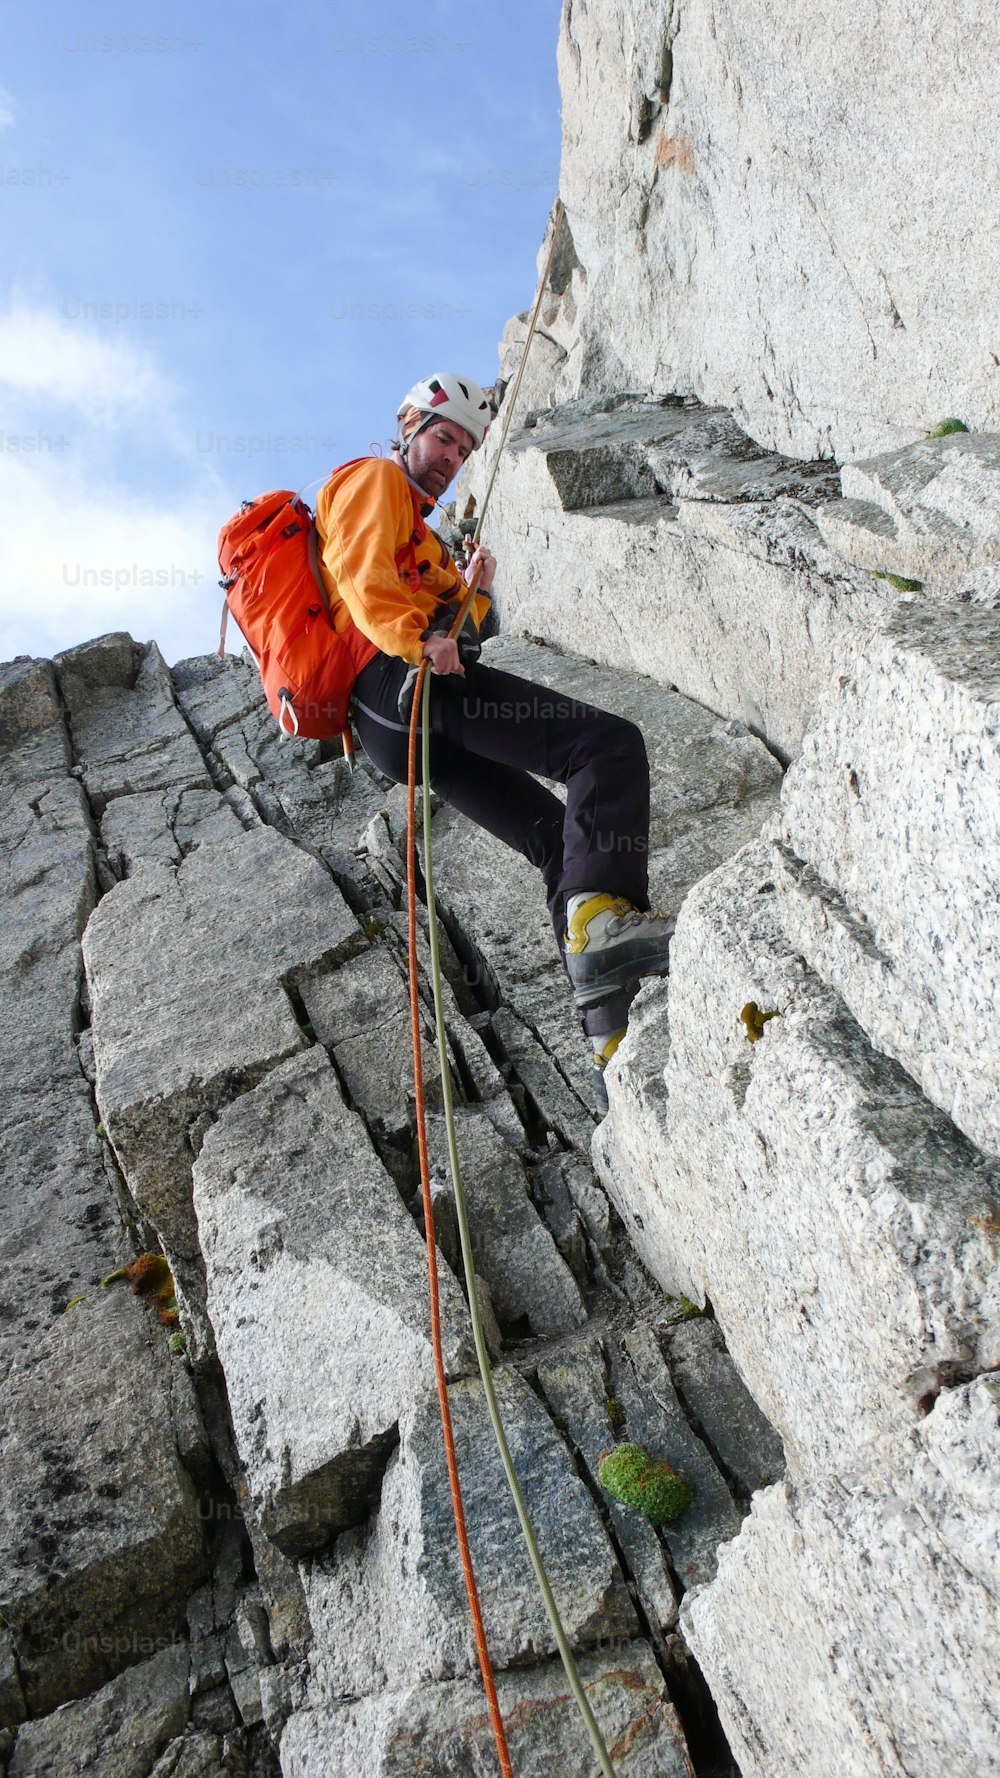 Un alpinista haciendo rappel desde una escarpada cresta rocosa en los Alpes franceses, cerca de Chamonix